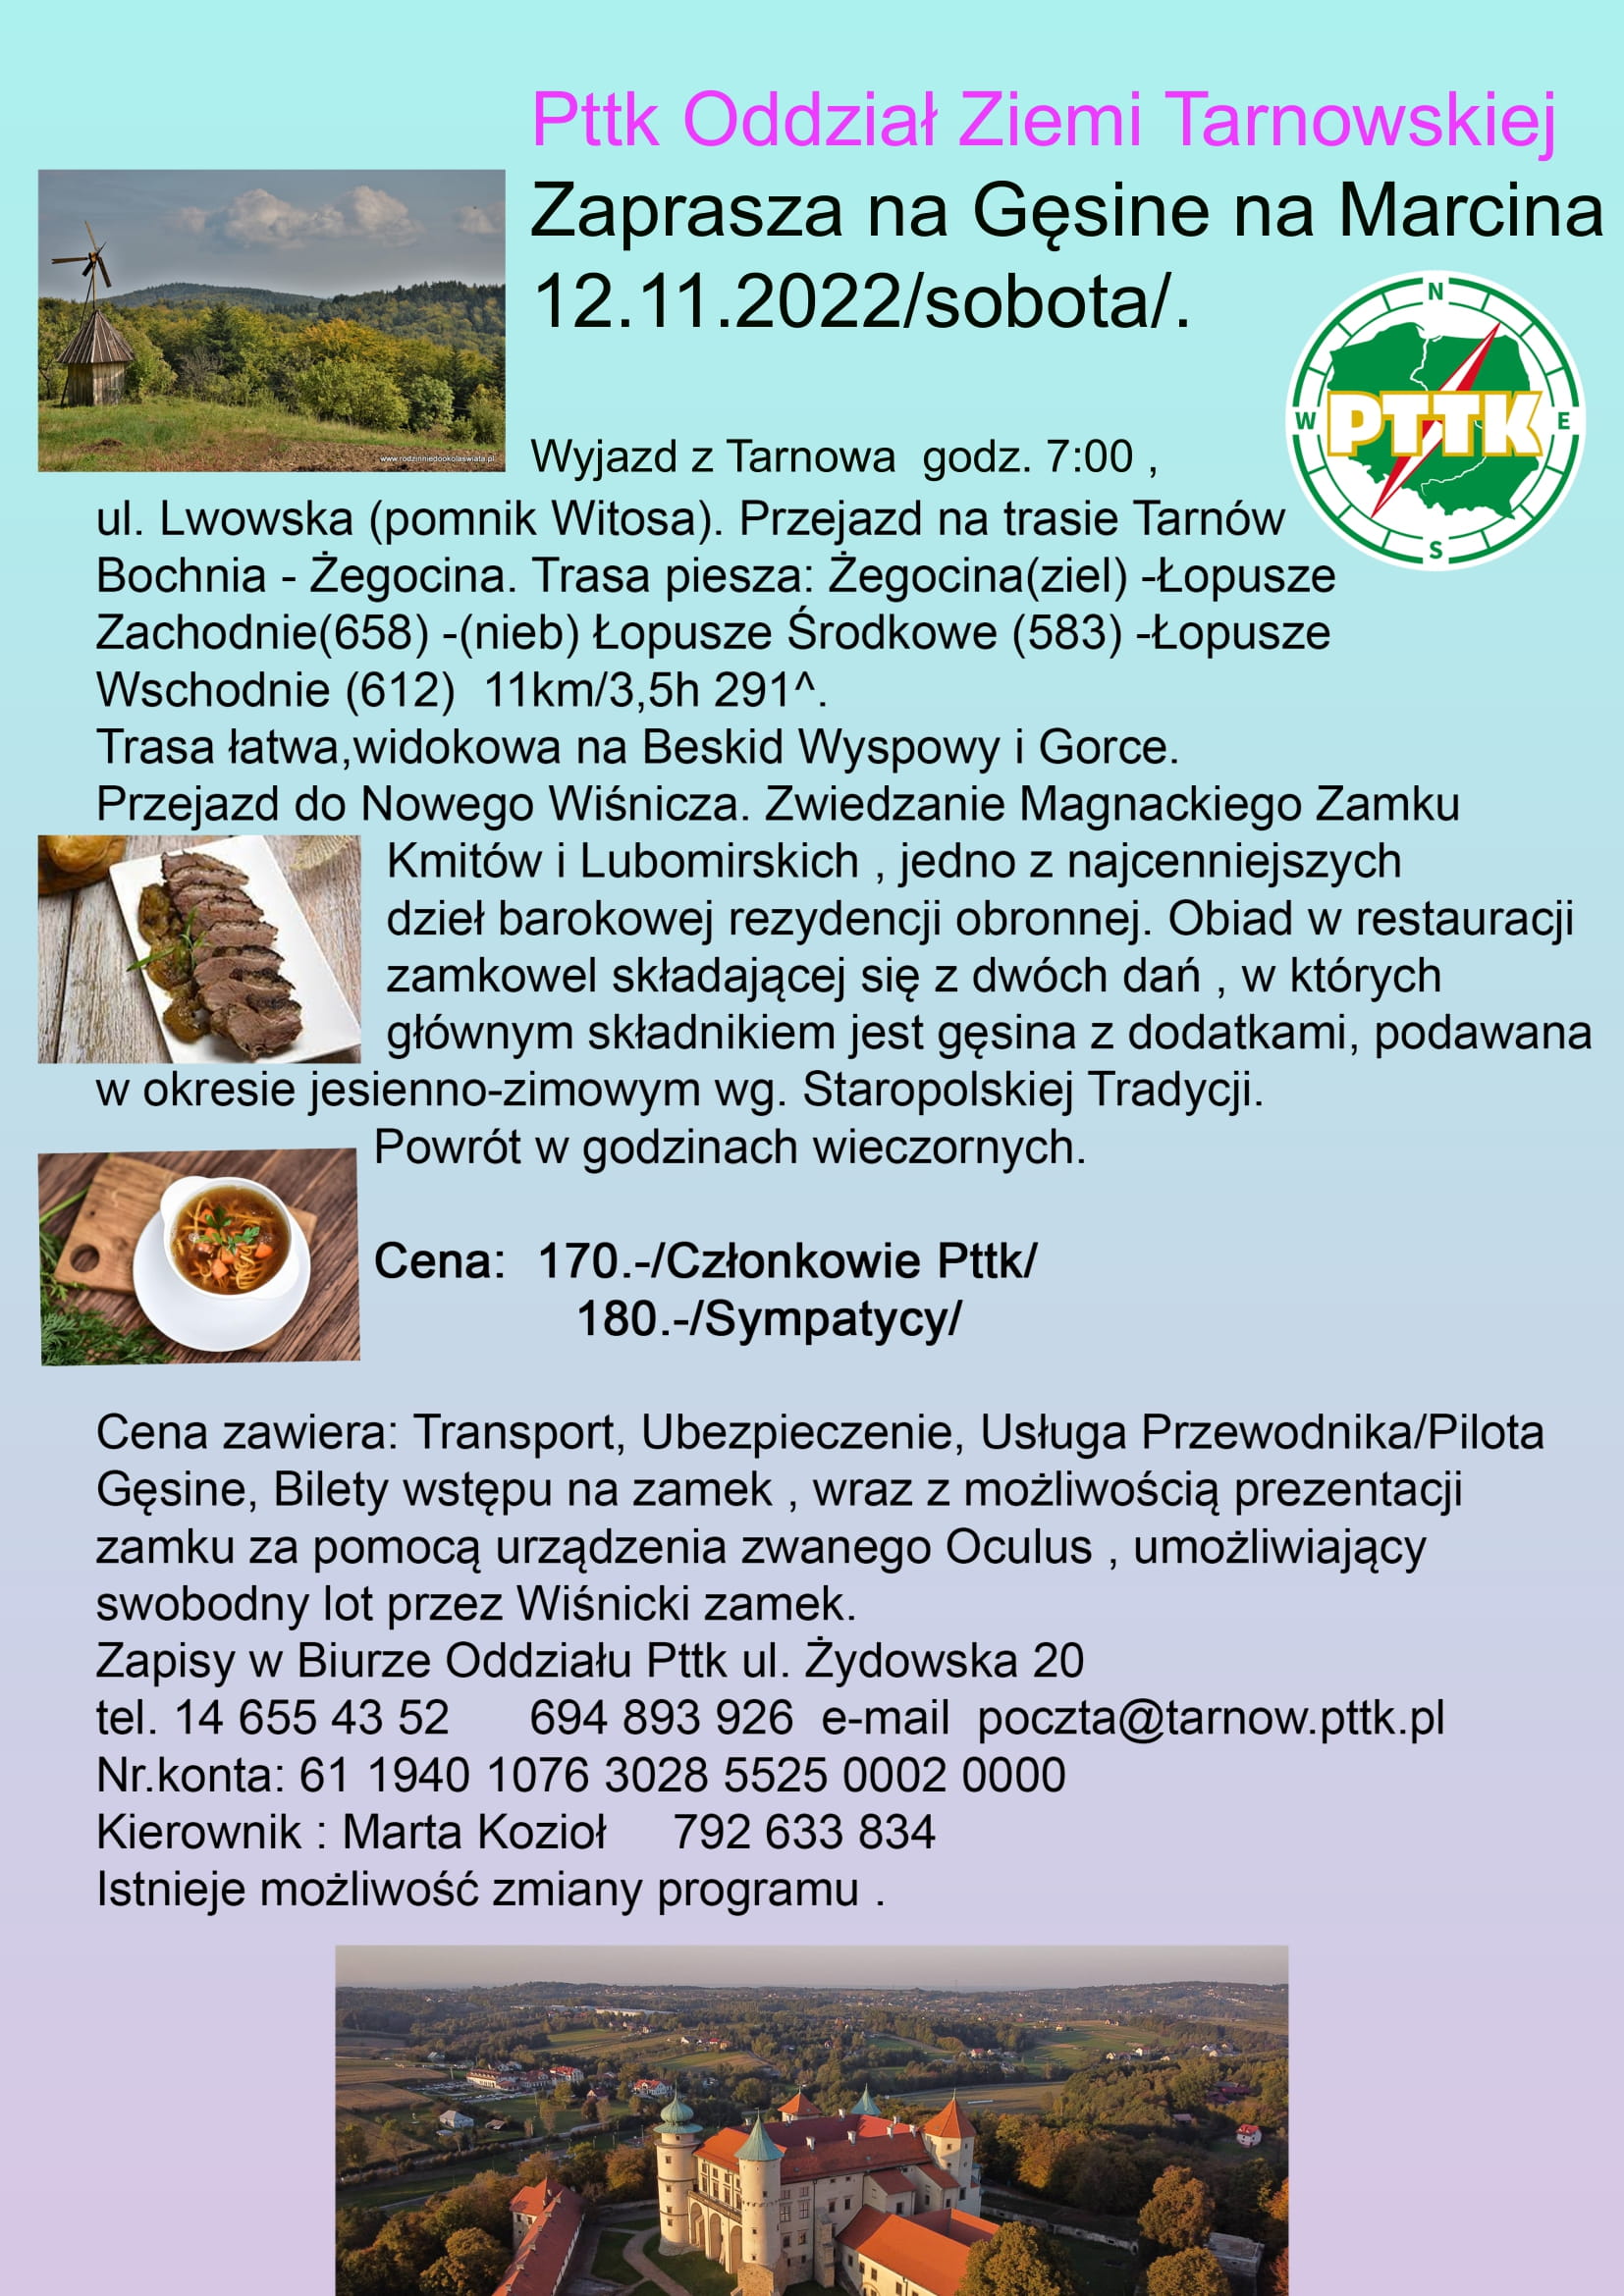 Grafika przedstawia informacje dotyczące oferty wyjazdowej do Nowego Wiśnicza organizowanej przez PTTK w Tarnowie